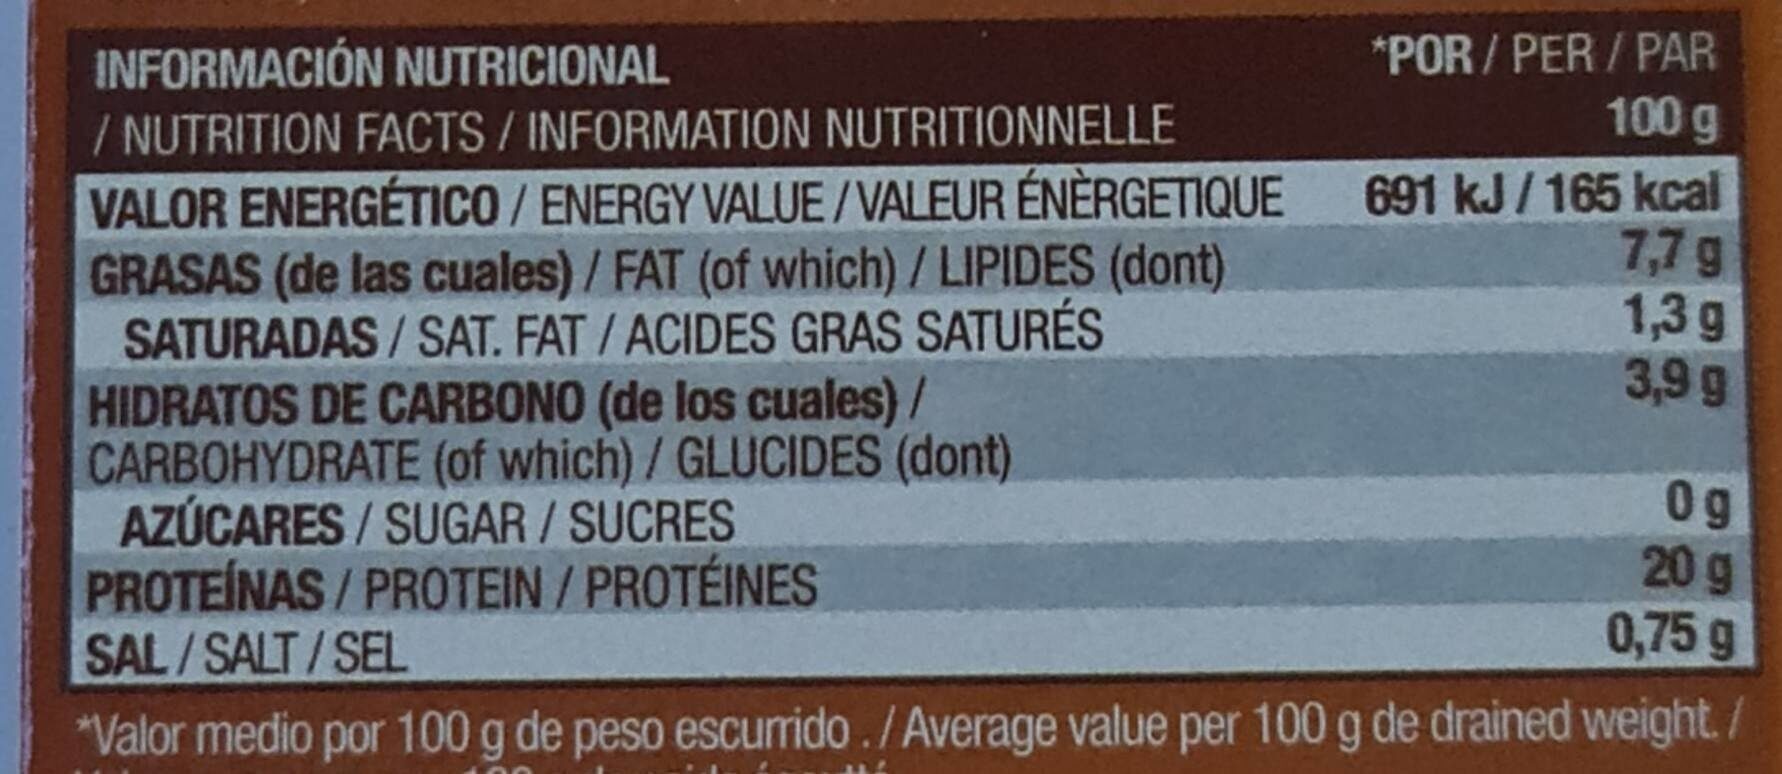 Mejillones en escabeche - Informació nutricional - es